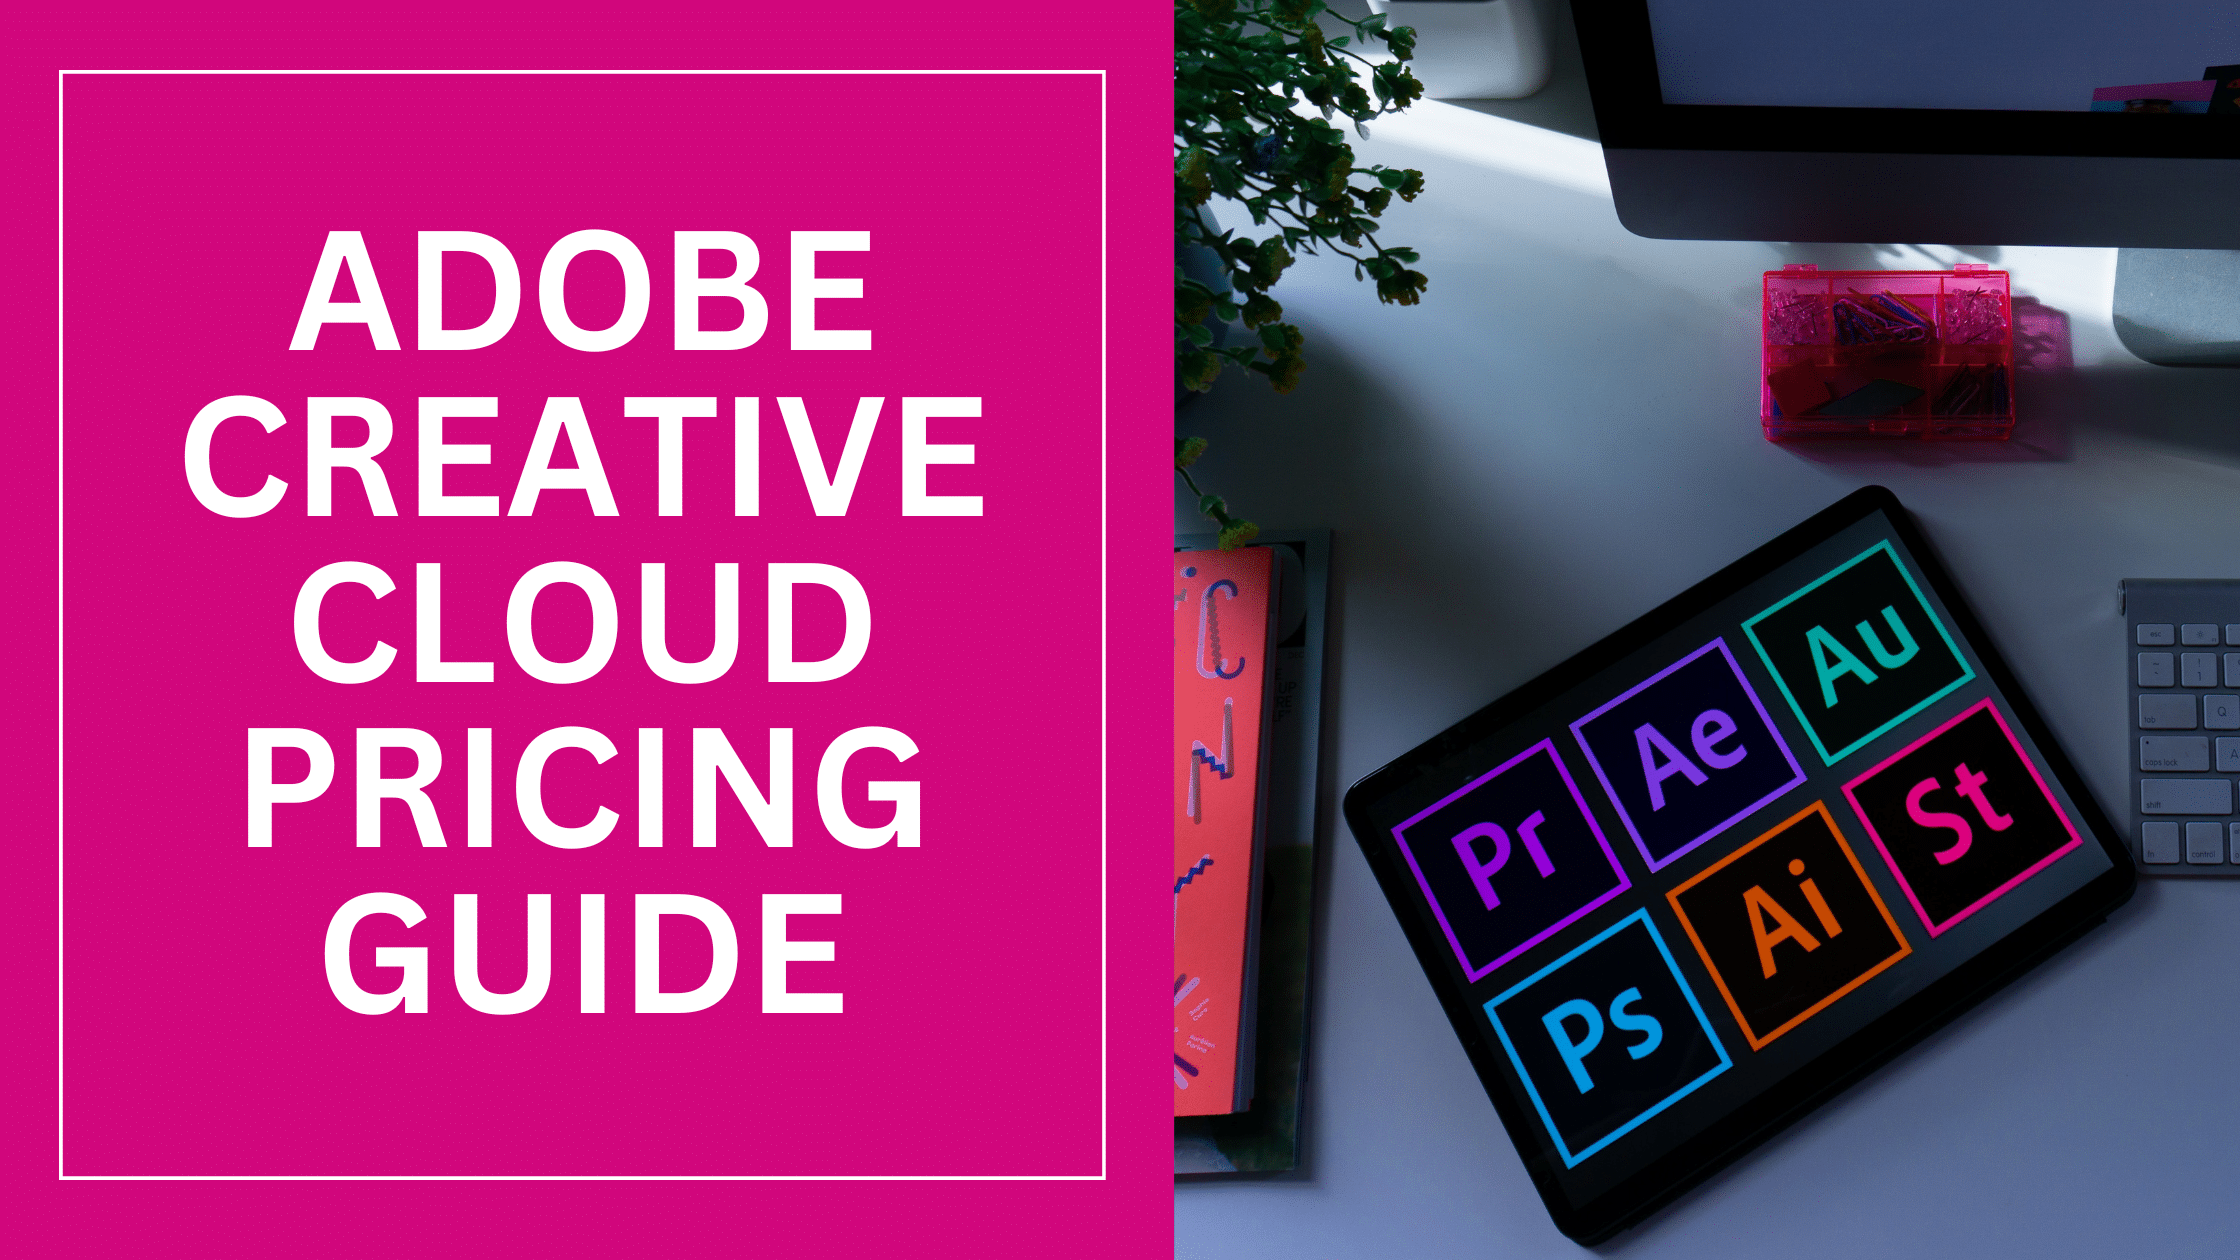 Adobe Creative Cloud Pricing Guide